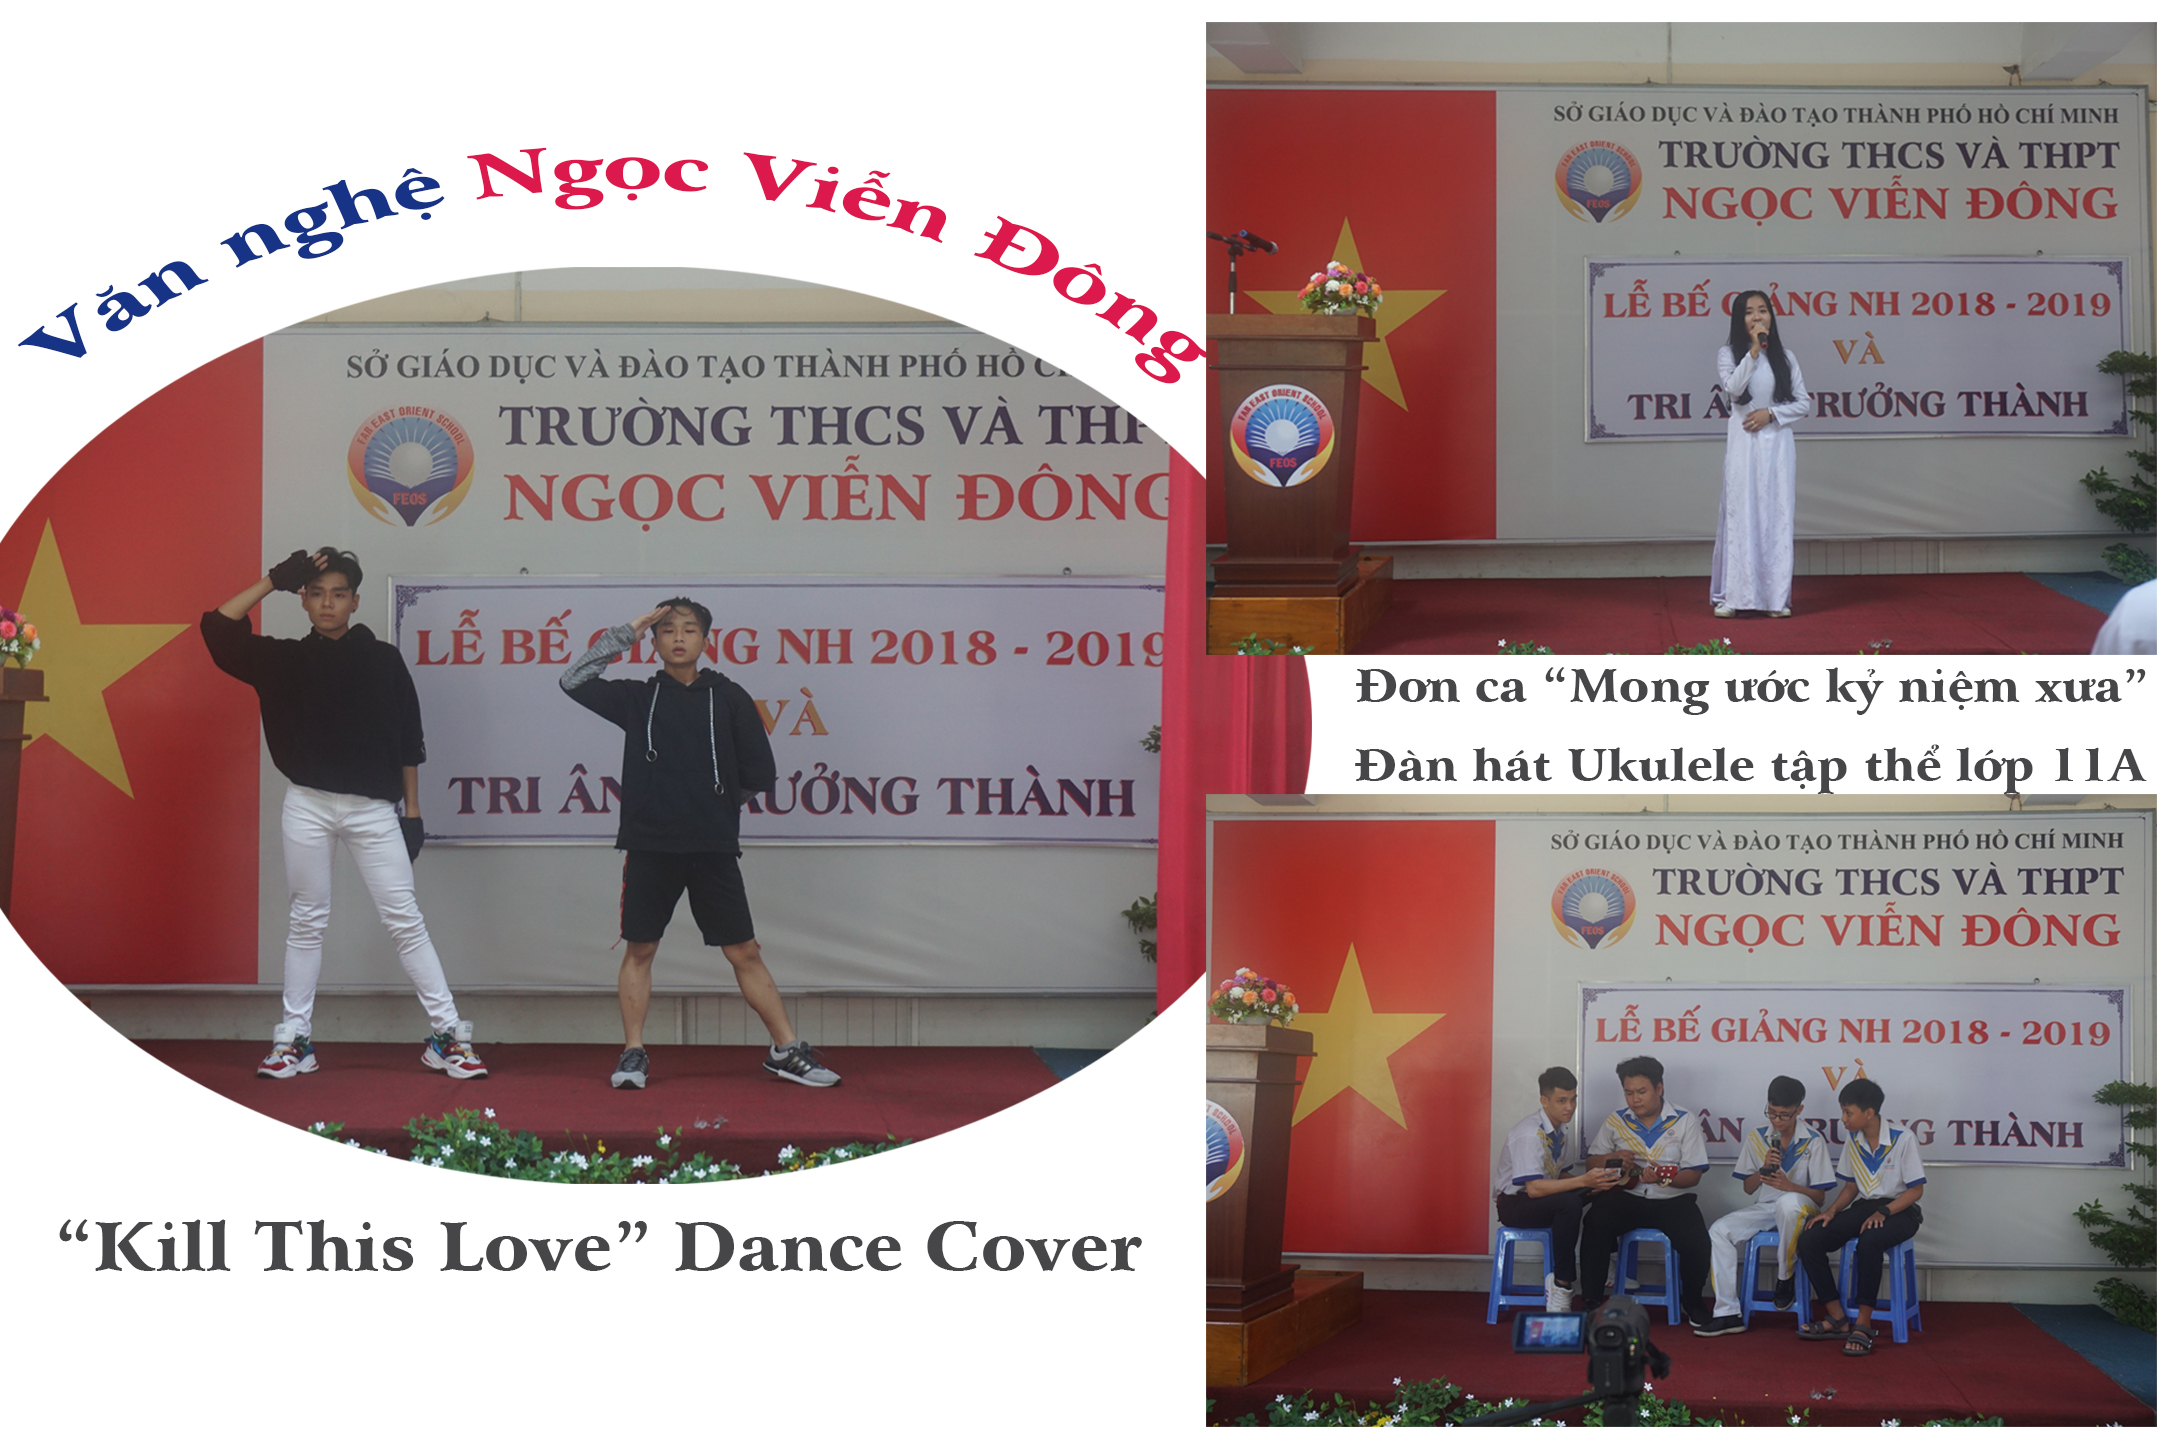 Văn nghệ Ngọc Viễn Đông: Dance cover "Kill This Love", Đơn ca "Mong ước kỷ niệm xưa", Đàn hát Ukulele...